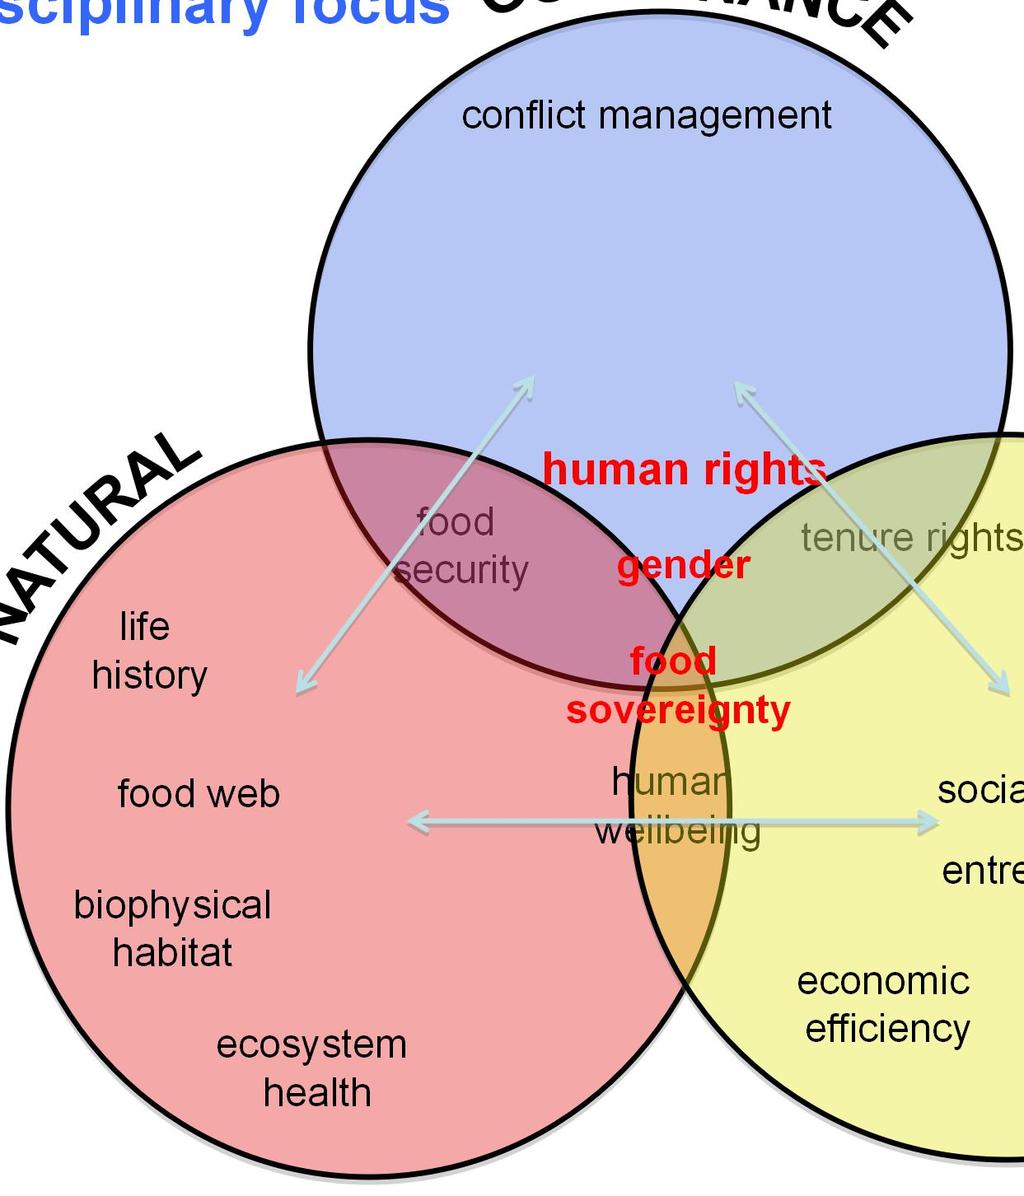 Interdisciplinary focus conflict